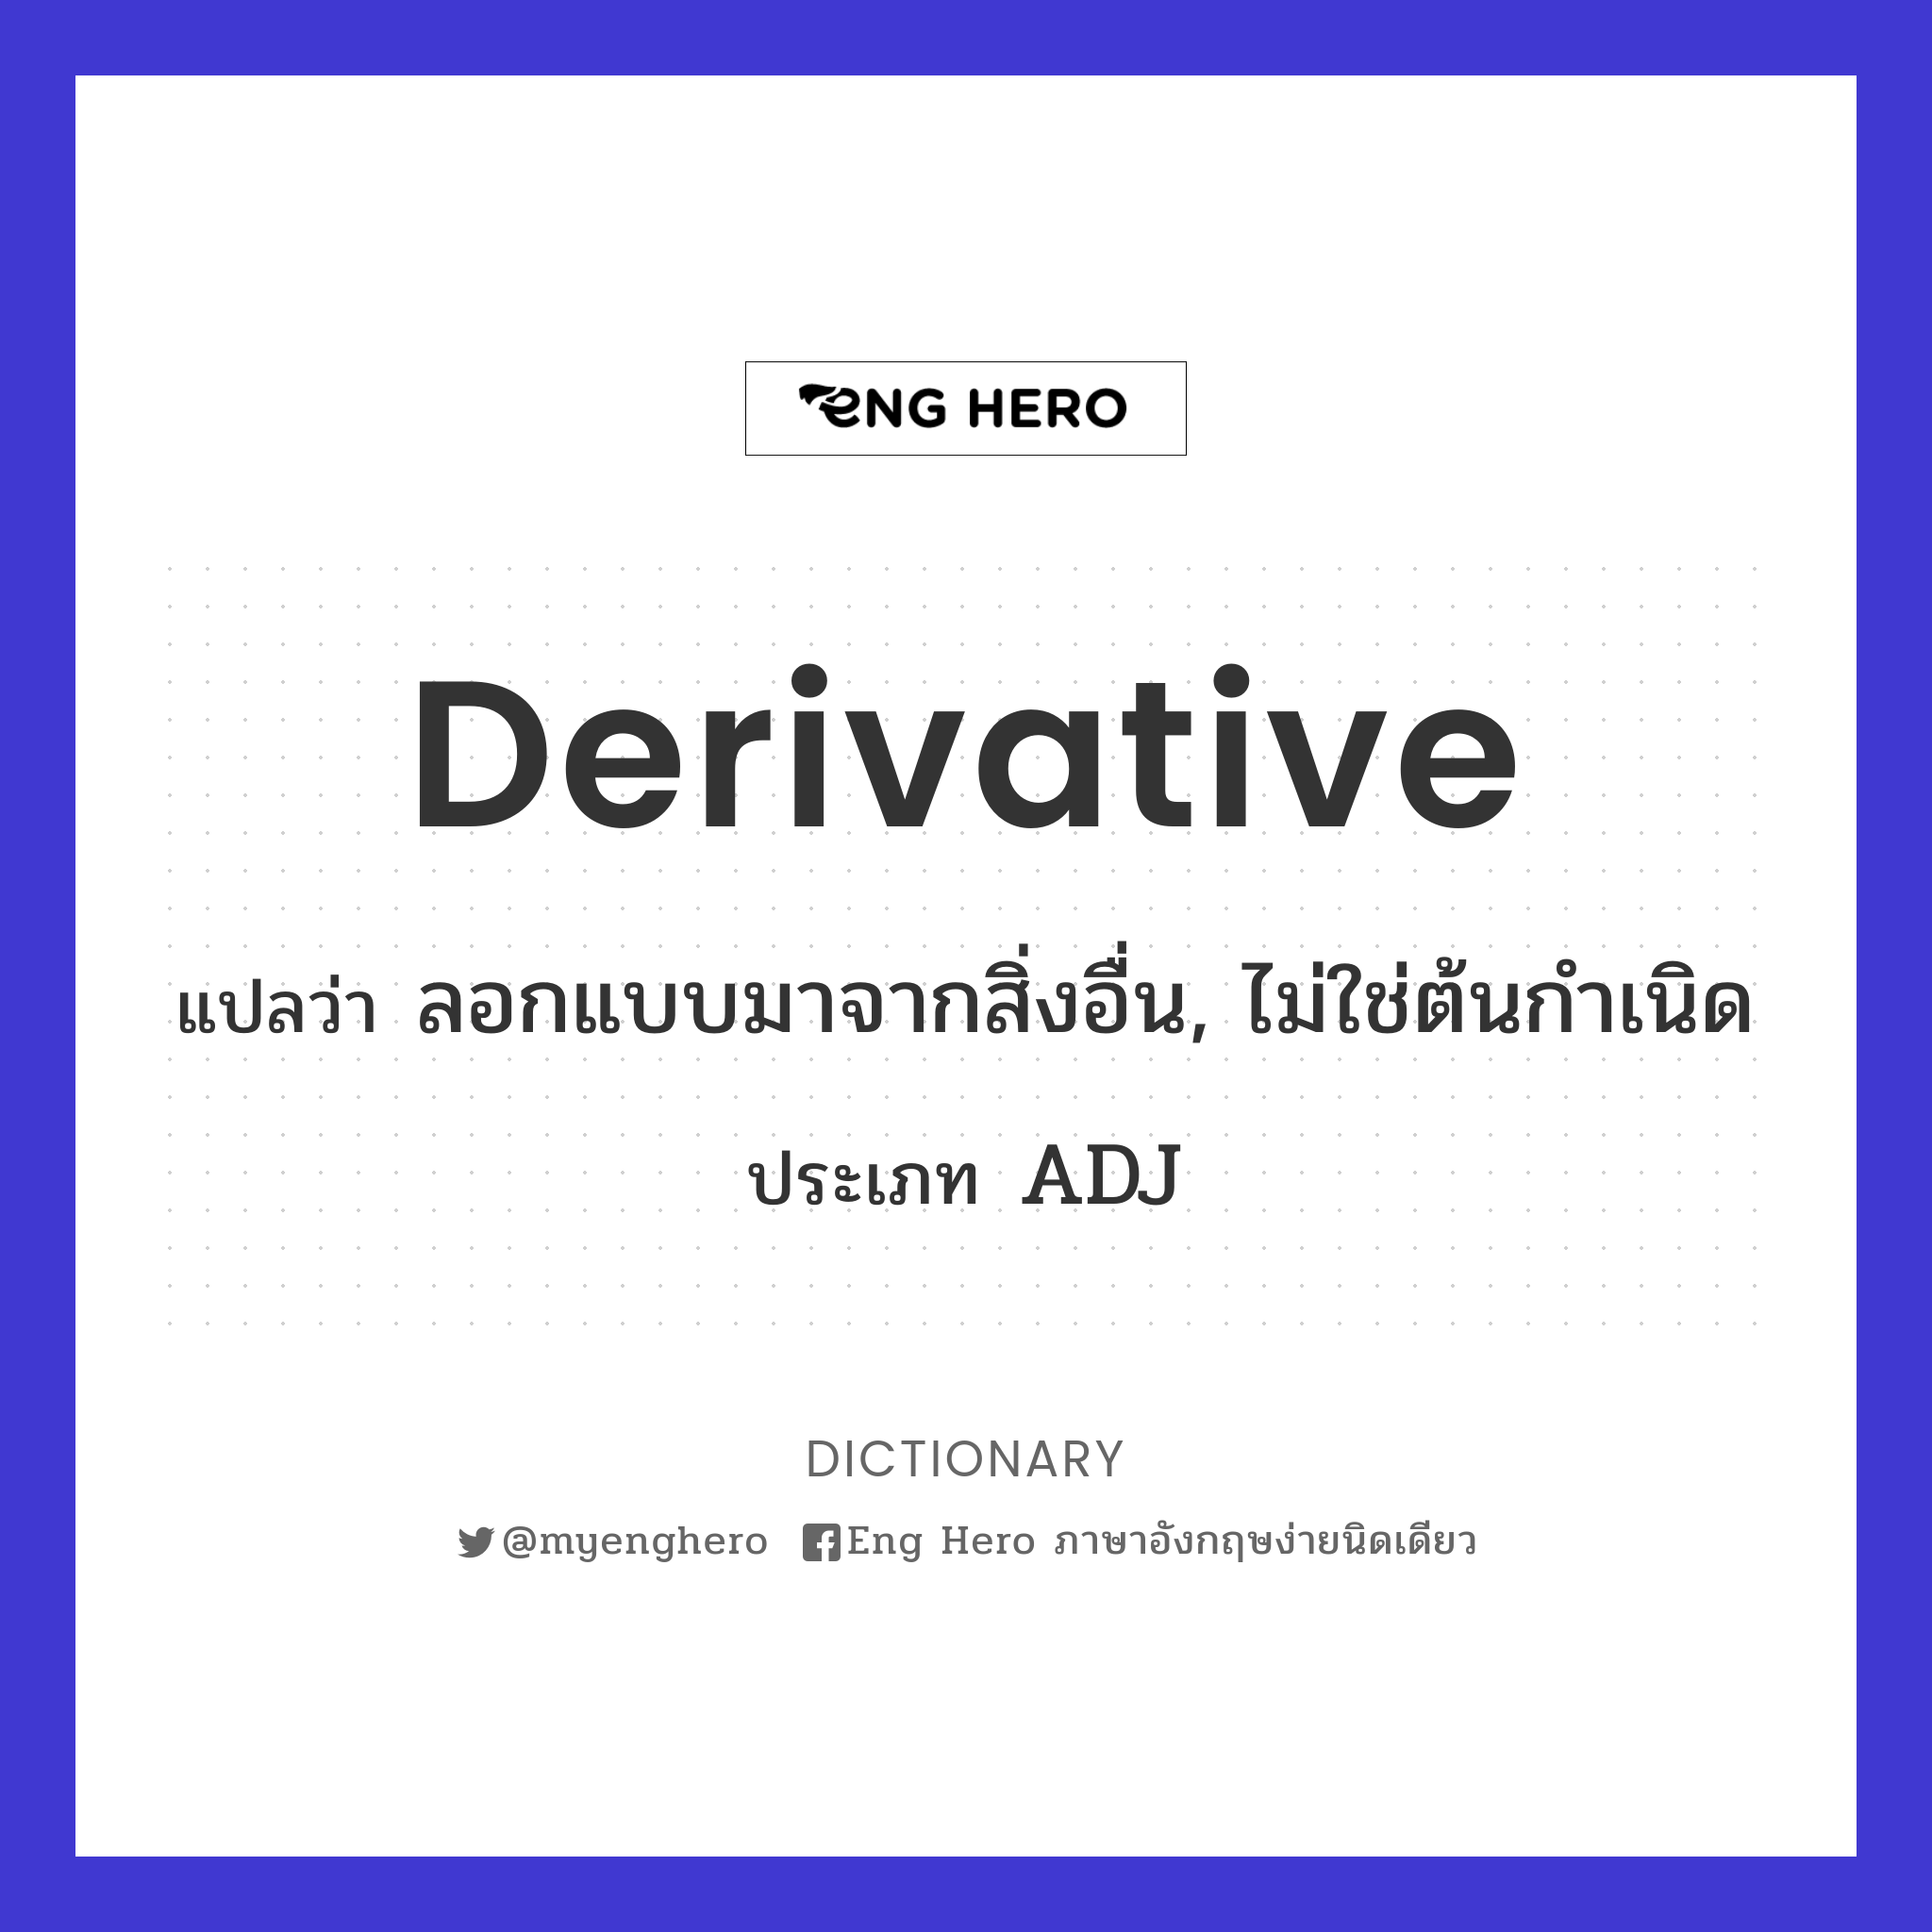 derivative